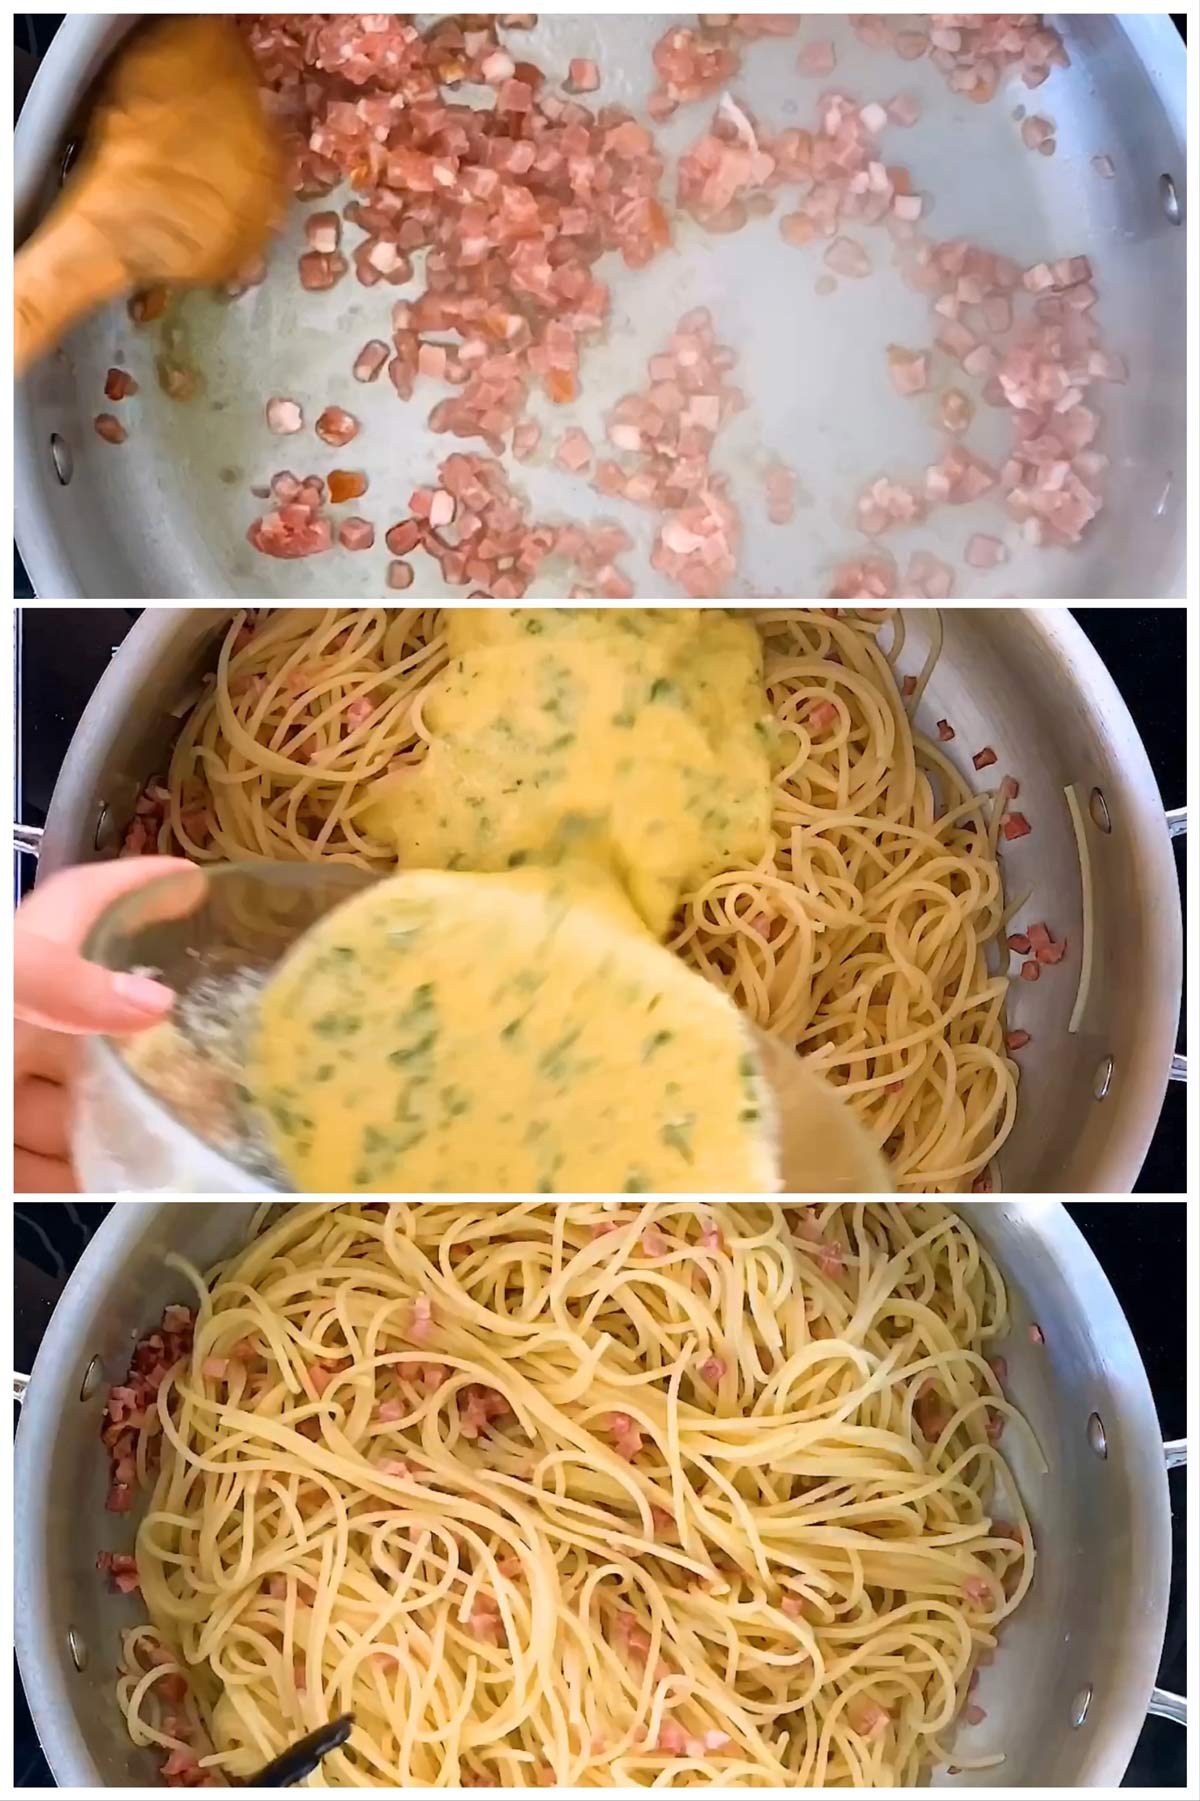 Bildanleitung zum Zubereiten von Spaghetti Carbonara